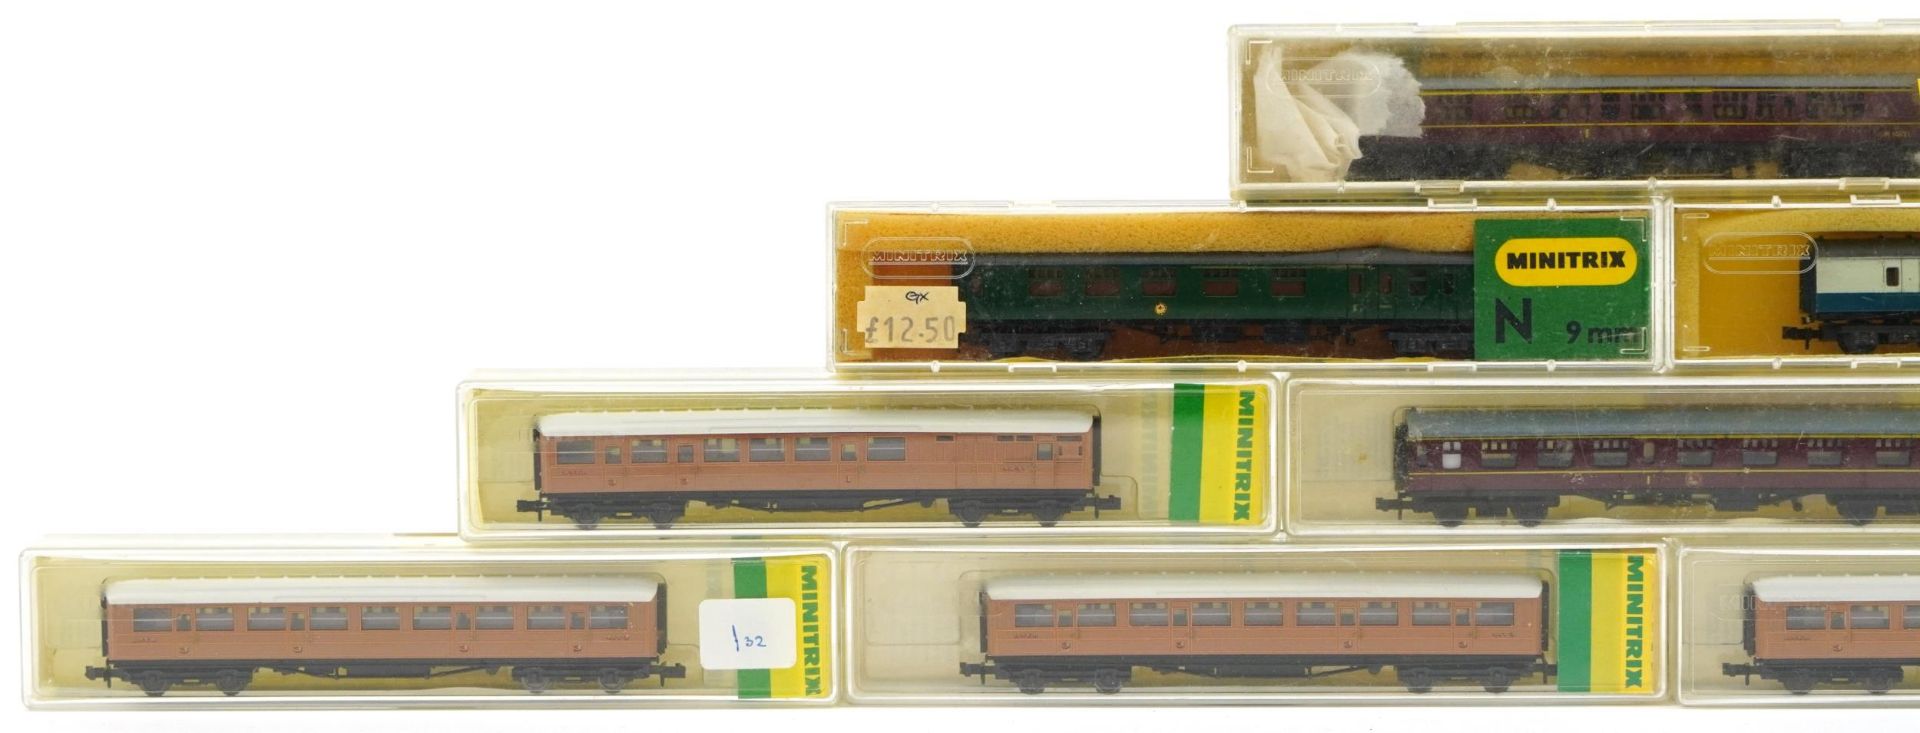 Ten Minitrix N gauge model railway carriages with cases, numbers 2926, 2938, 3112, 13003, 13008, - Bild 2 aus 5